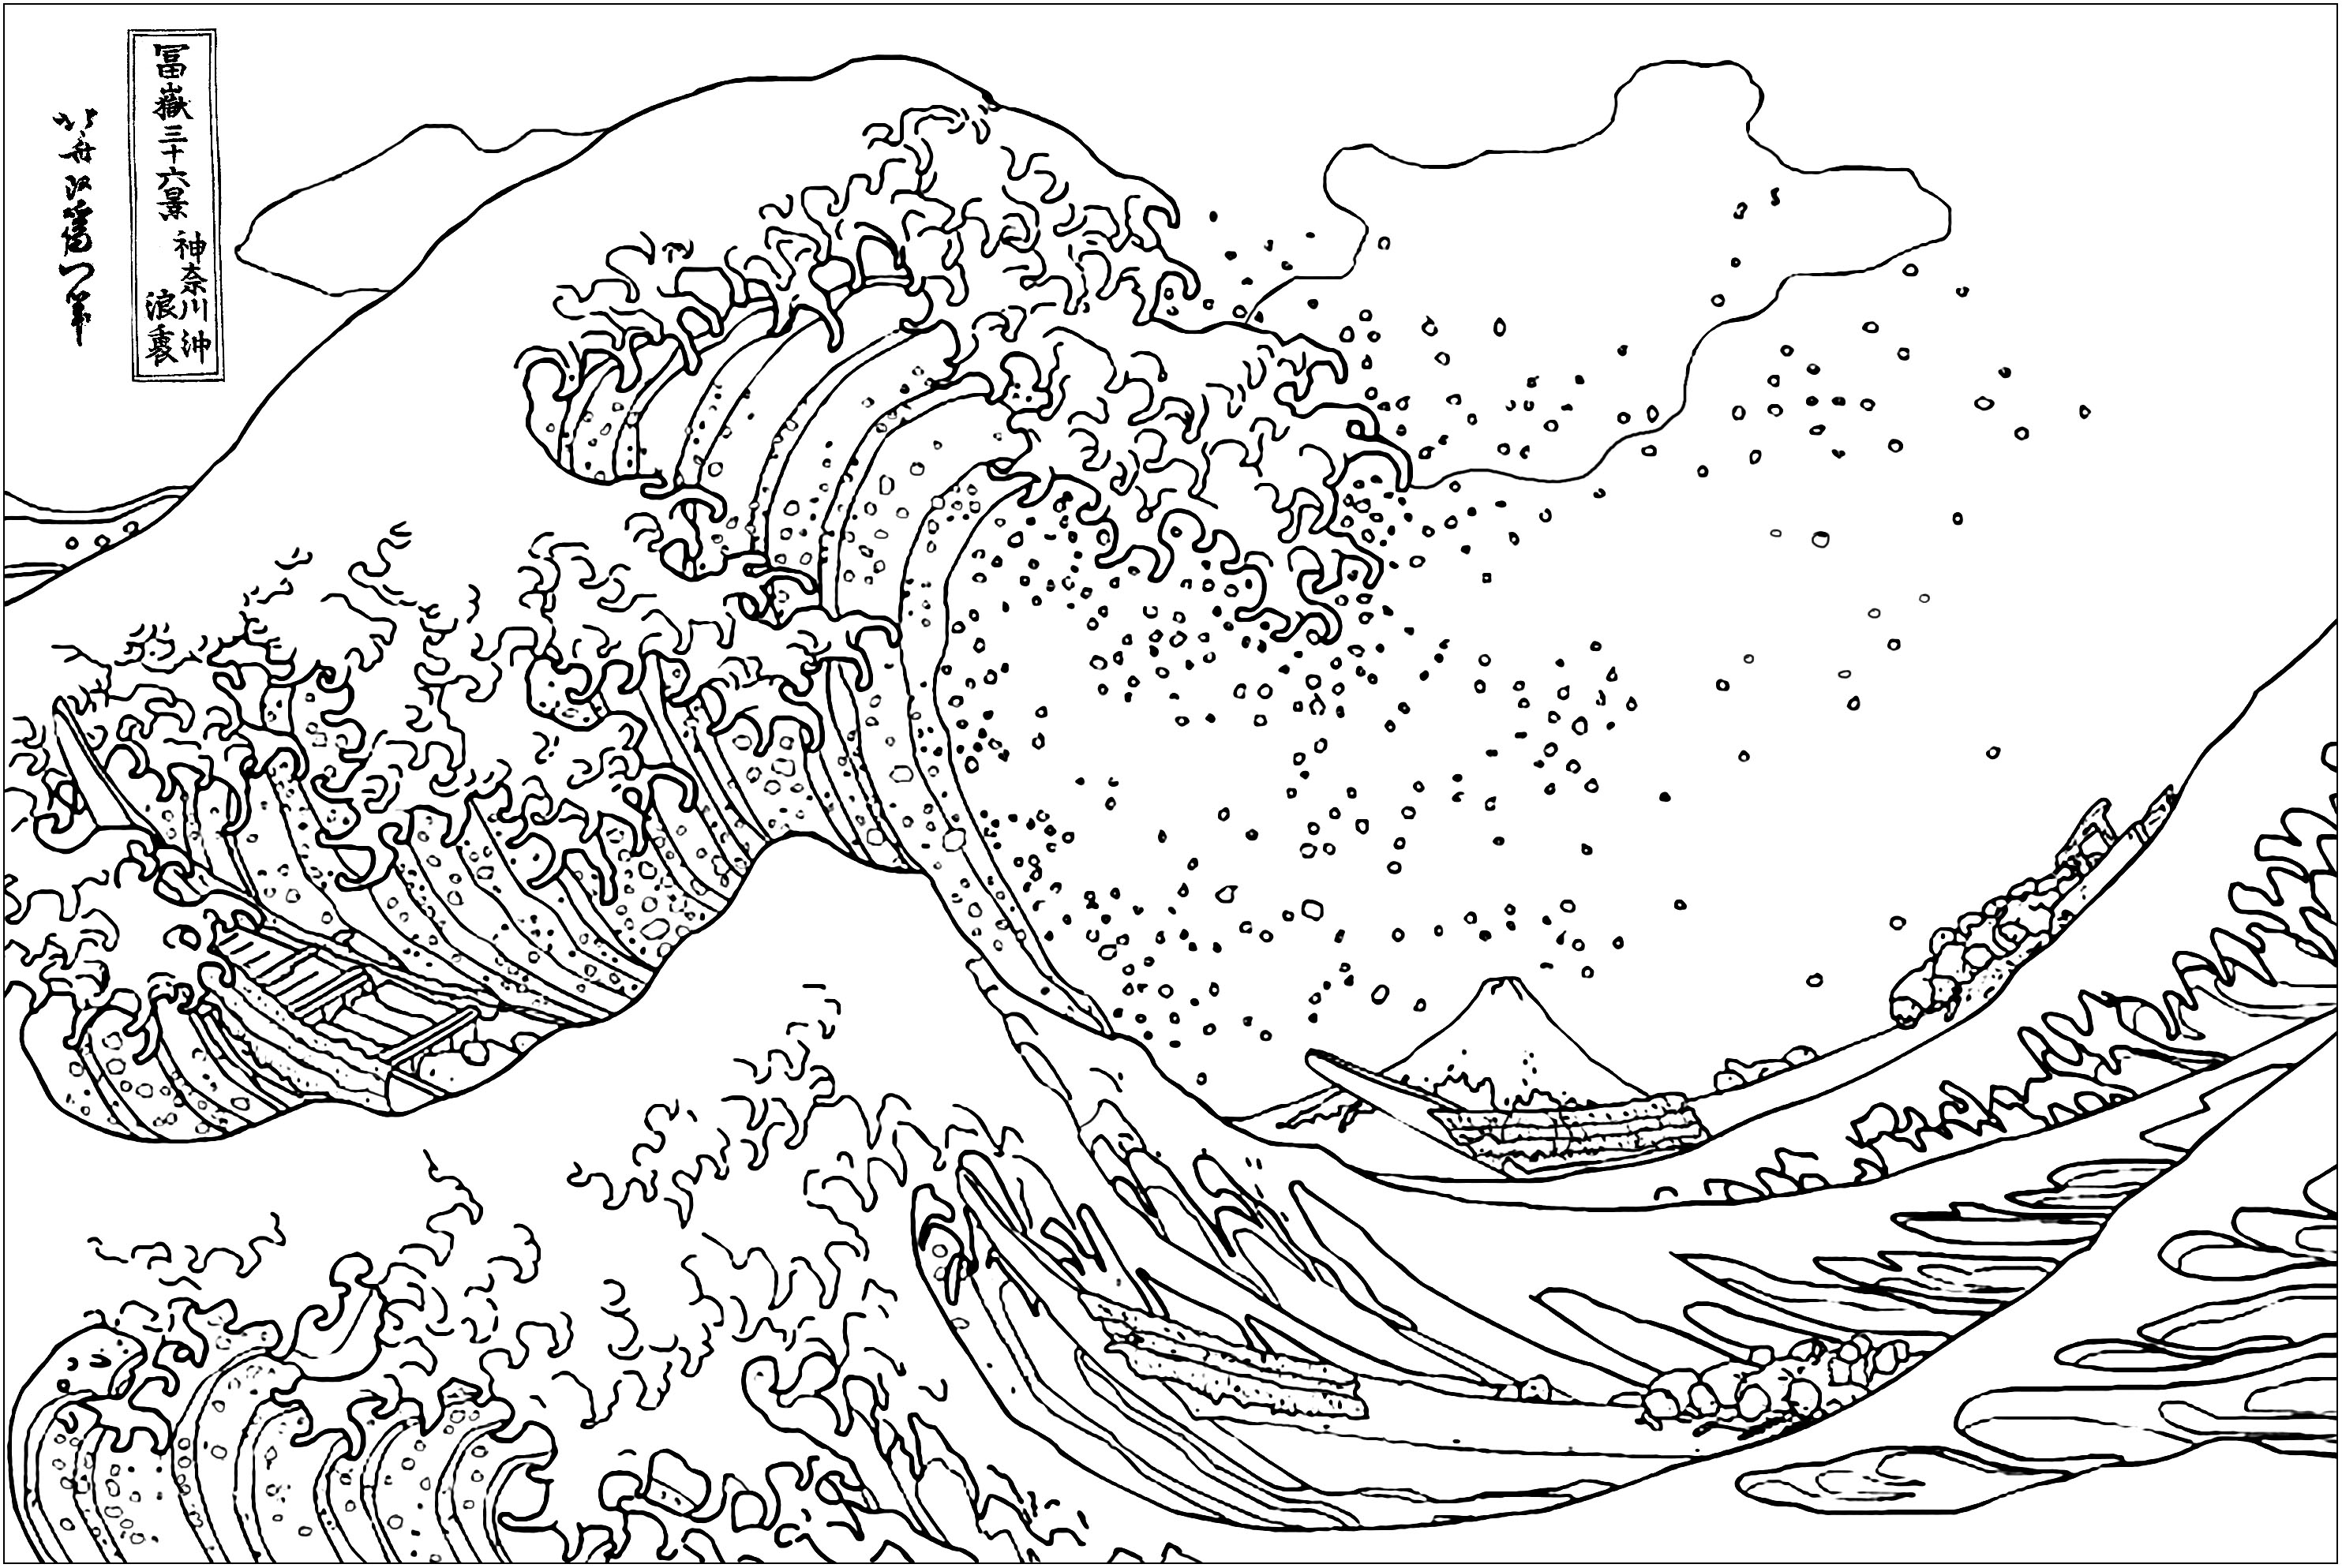 Pagina da colorare ispirata a questa famosissima stampa su blocco di legno dell'artista giapponese ukiyo-e Hokusai.